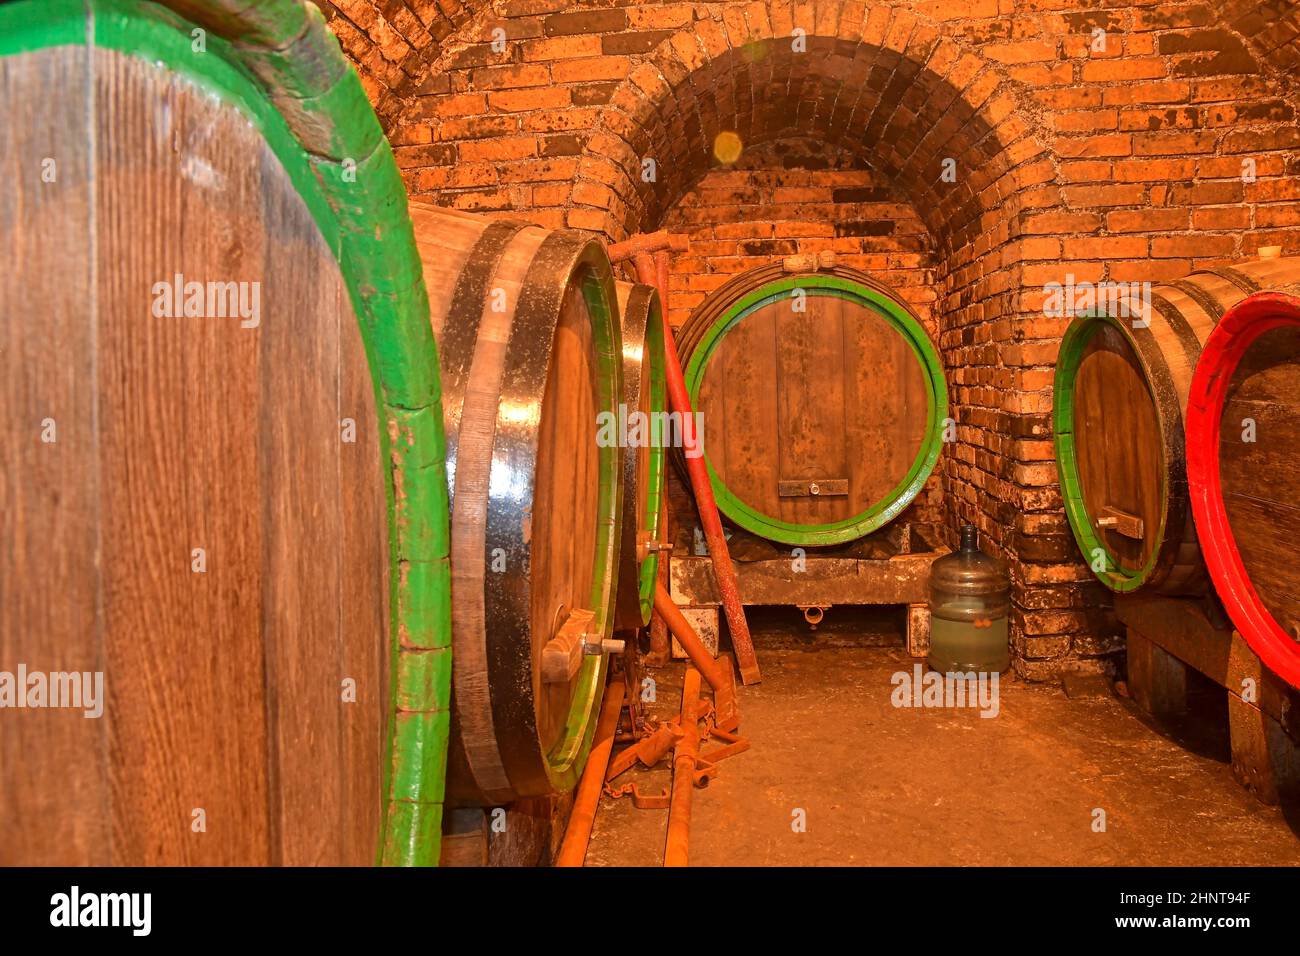 Weinfässer in einem Keller gestapelt. Fässer Wein in einem Weinkeller, einem alten Weinkeller mit gewölbten Ziegeldecken. Traditionelle Weinherstellung Stockfoto